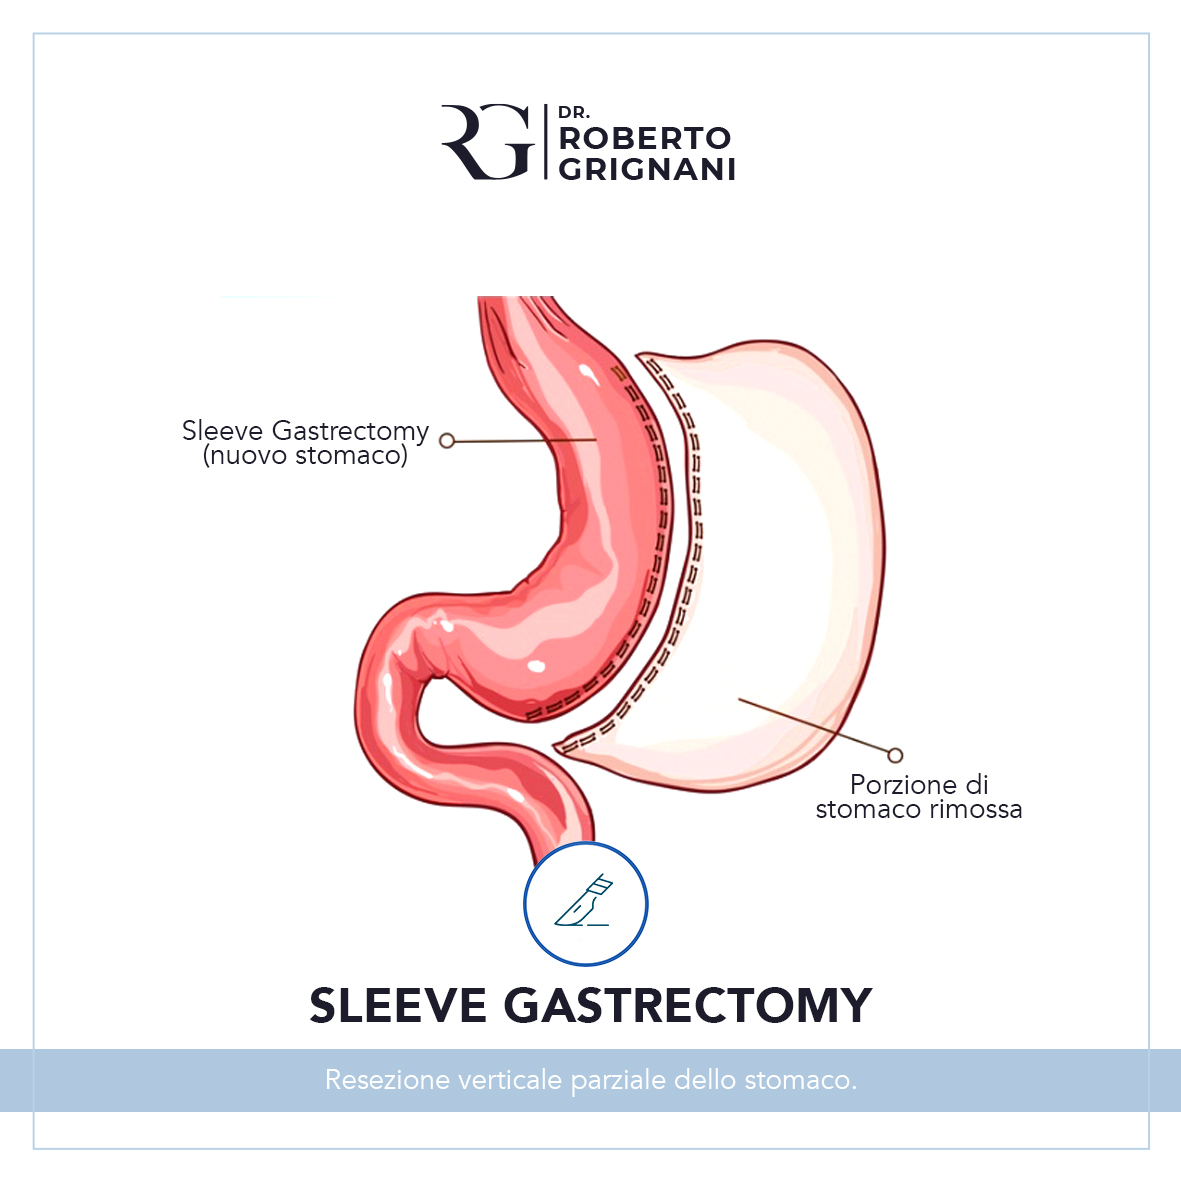 sleeve gastrectomy intervento chirurgico per il trattamento dell'obesità